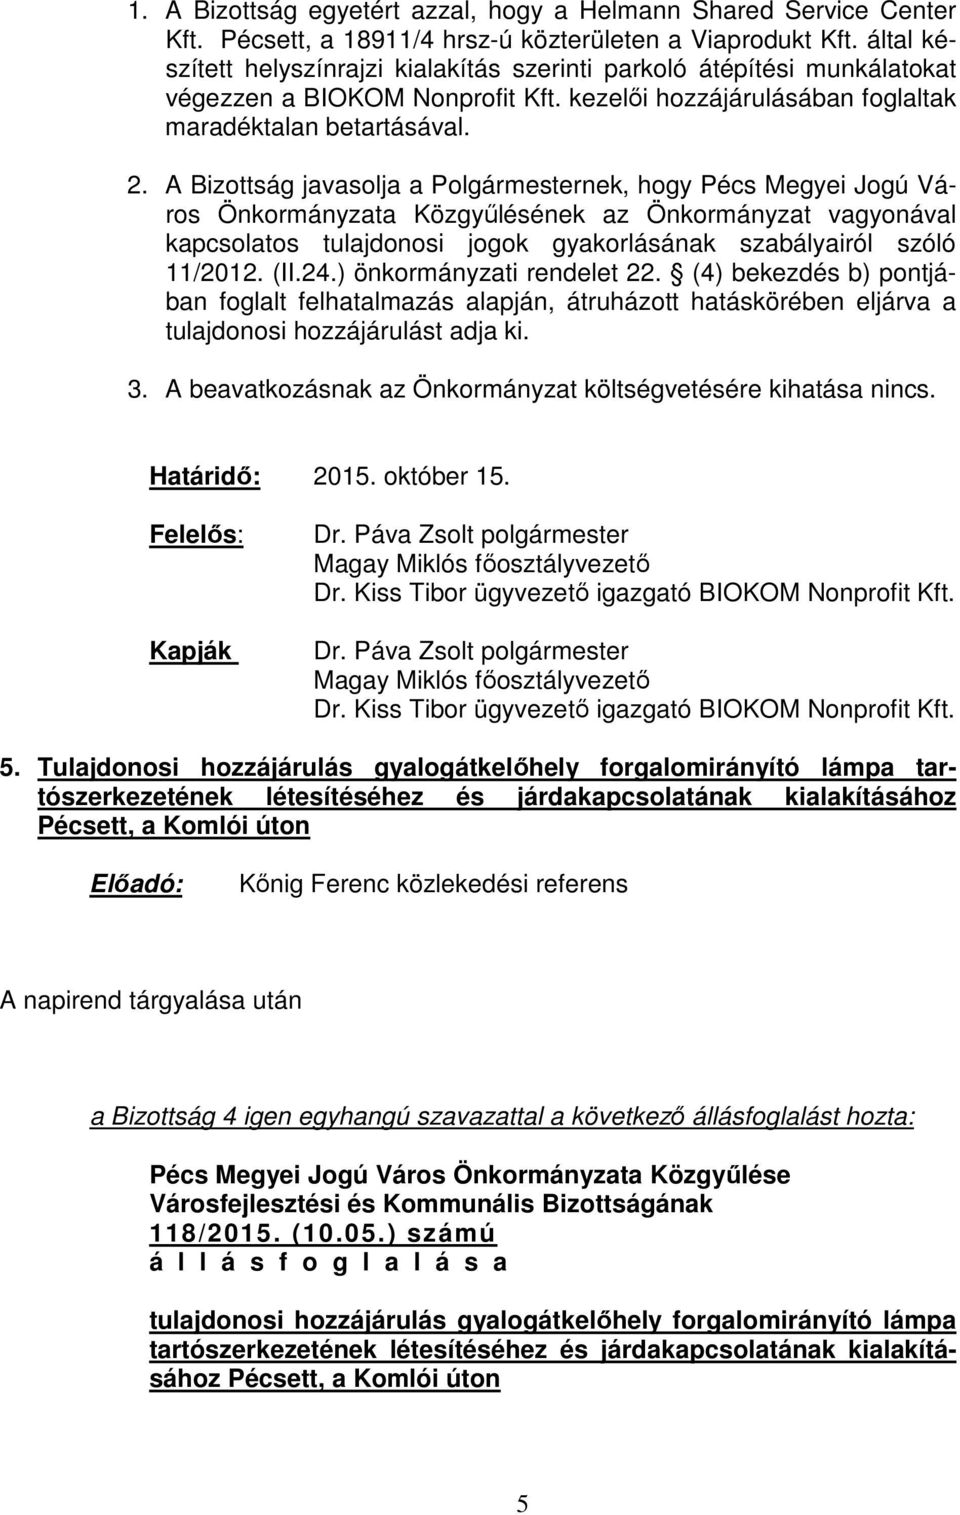 A Bizottság javasolja a Polgármesternek, hogy Pécs Megyei Jogú Város Önkormányzata Közgyűlésének az Önkormányzat vagyonával kapcsolatos tulajdonosi jogok gyakorlásának szabályairól szóló 11/2012. (II.